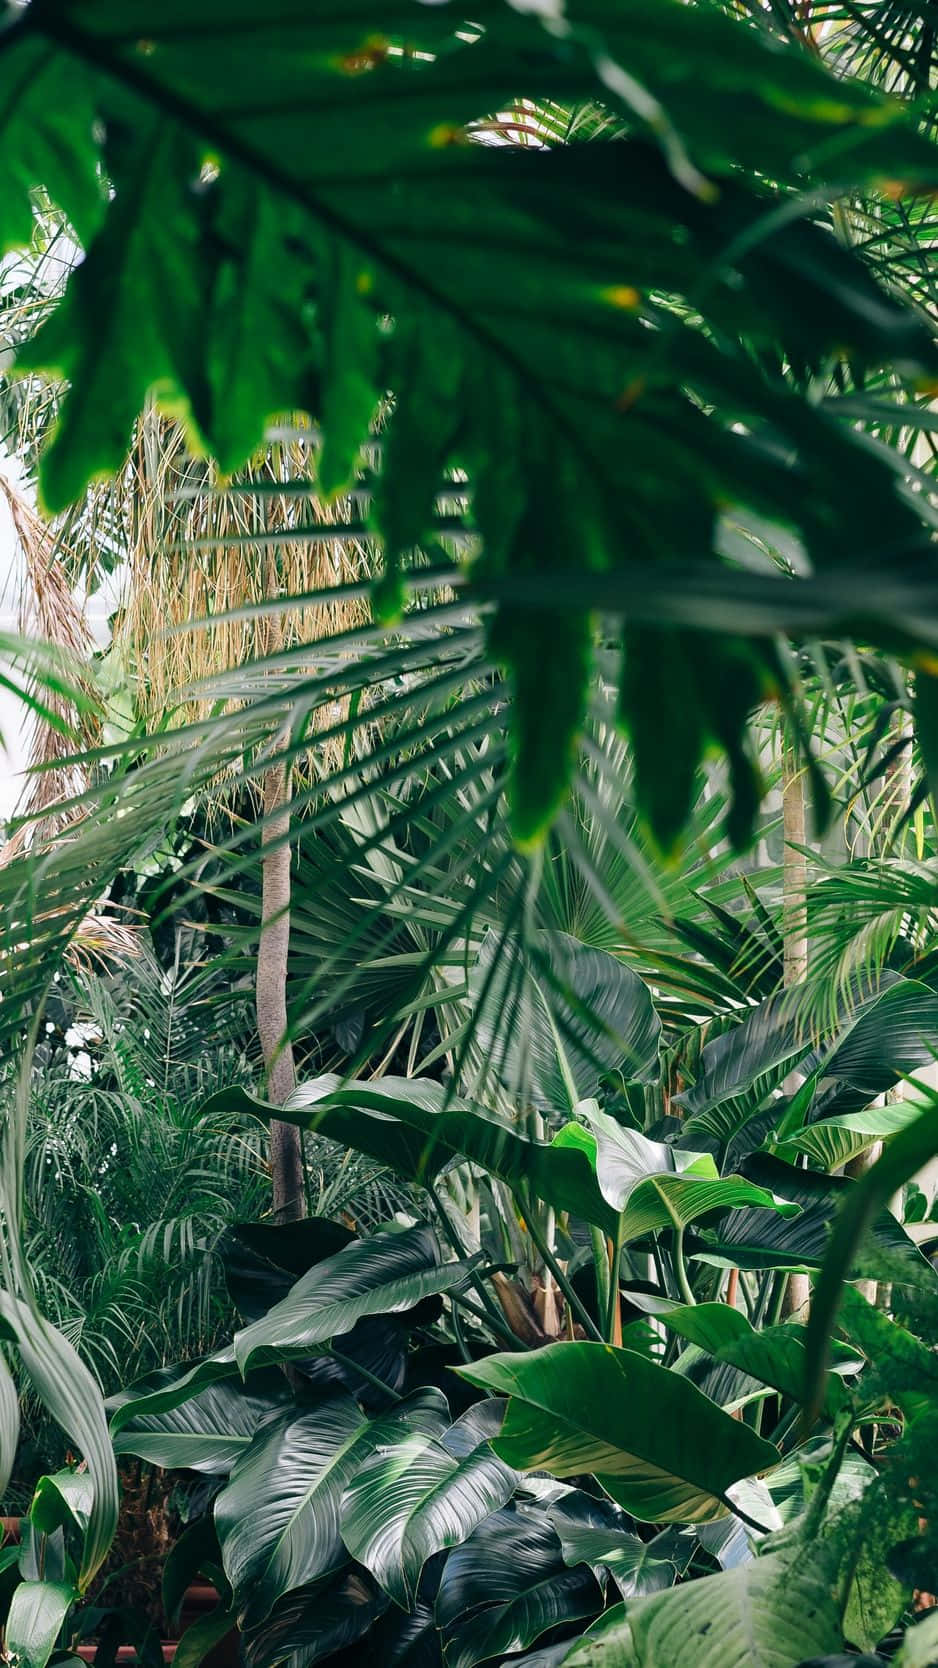 Einpaar Sitzt In Einem Tropischen Garten. Wallpaper